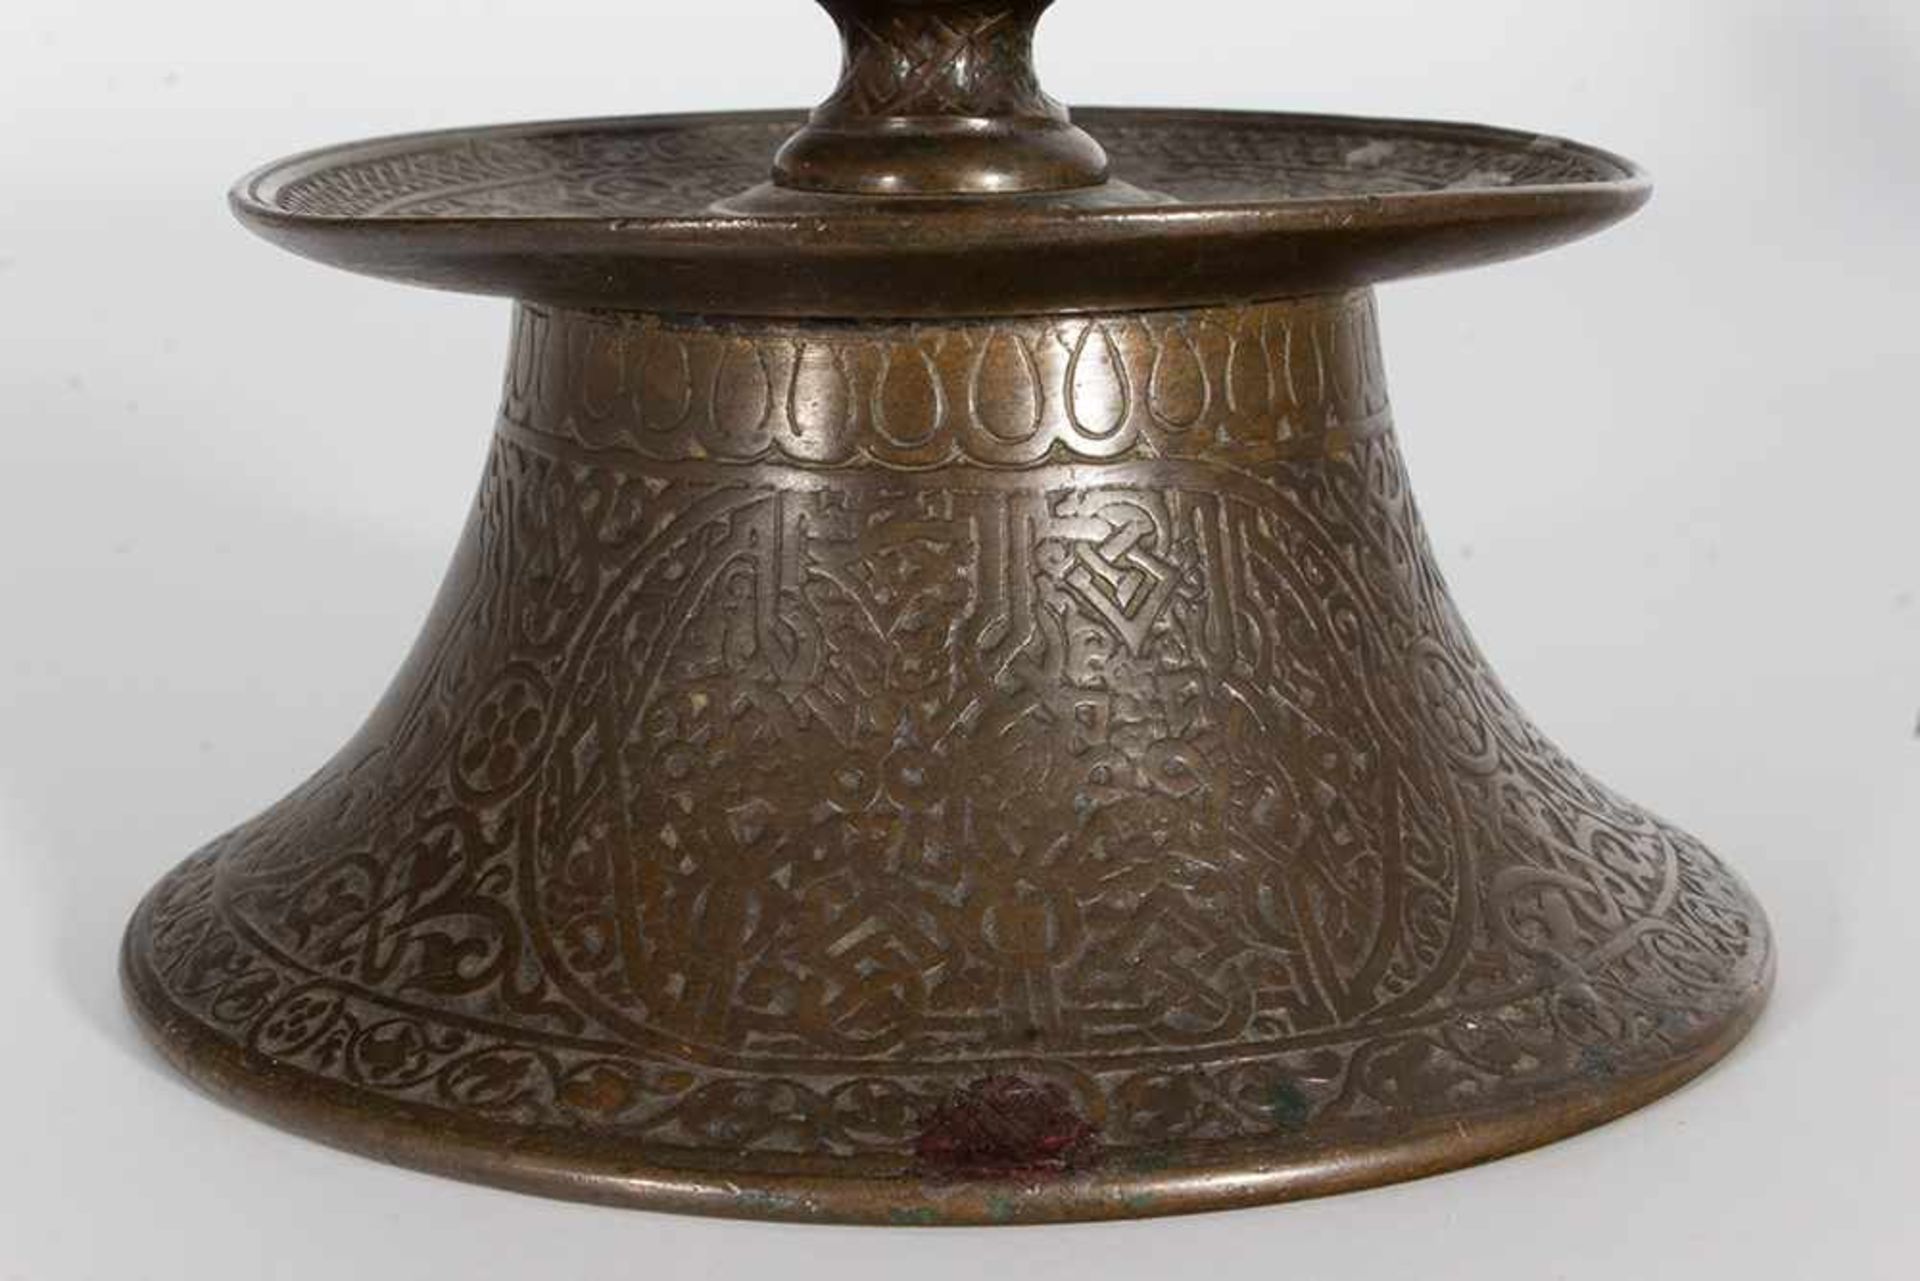 Dos candeleros islámicos en bronce con decoración estilizada, uno con incrustaciones en plata, de - Bild 3 aus 6